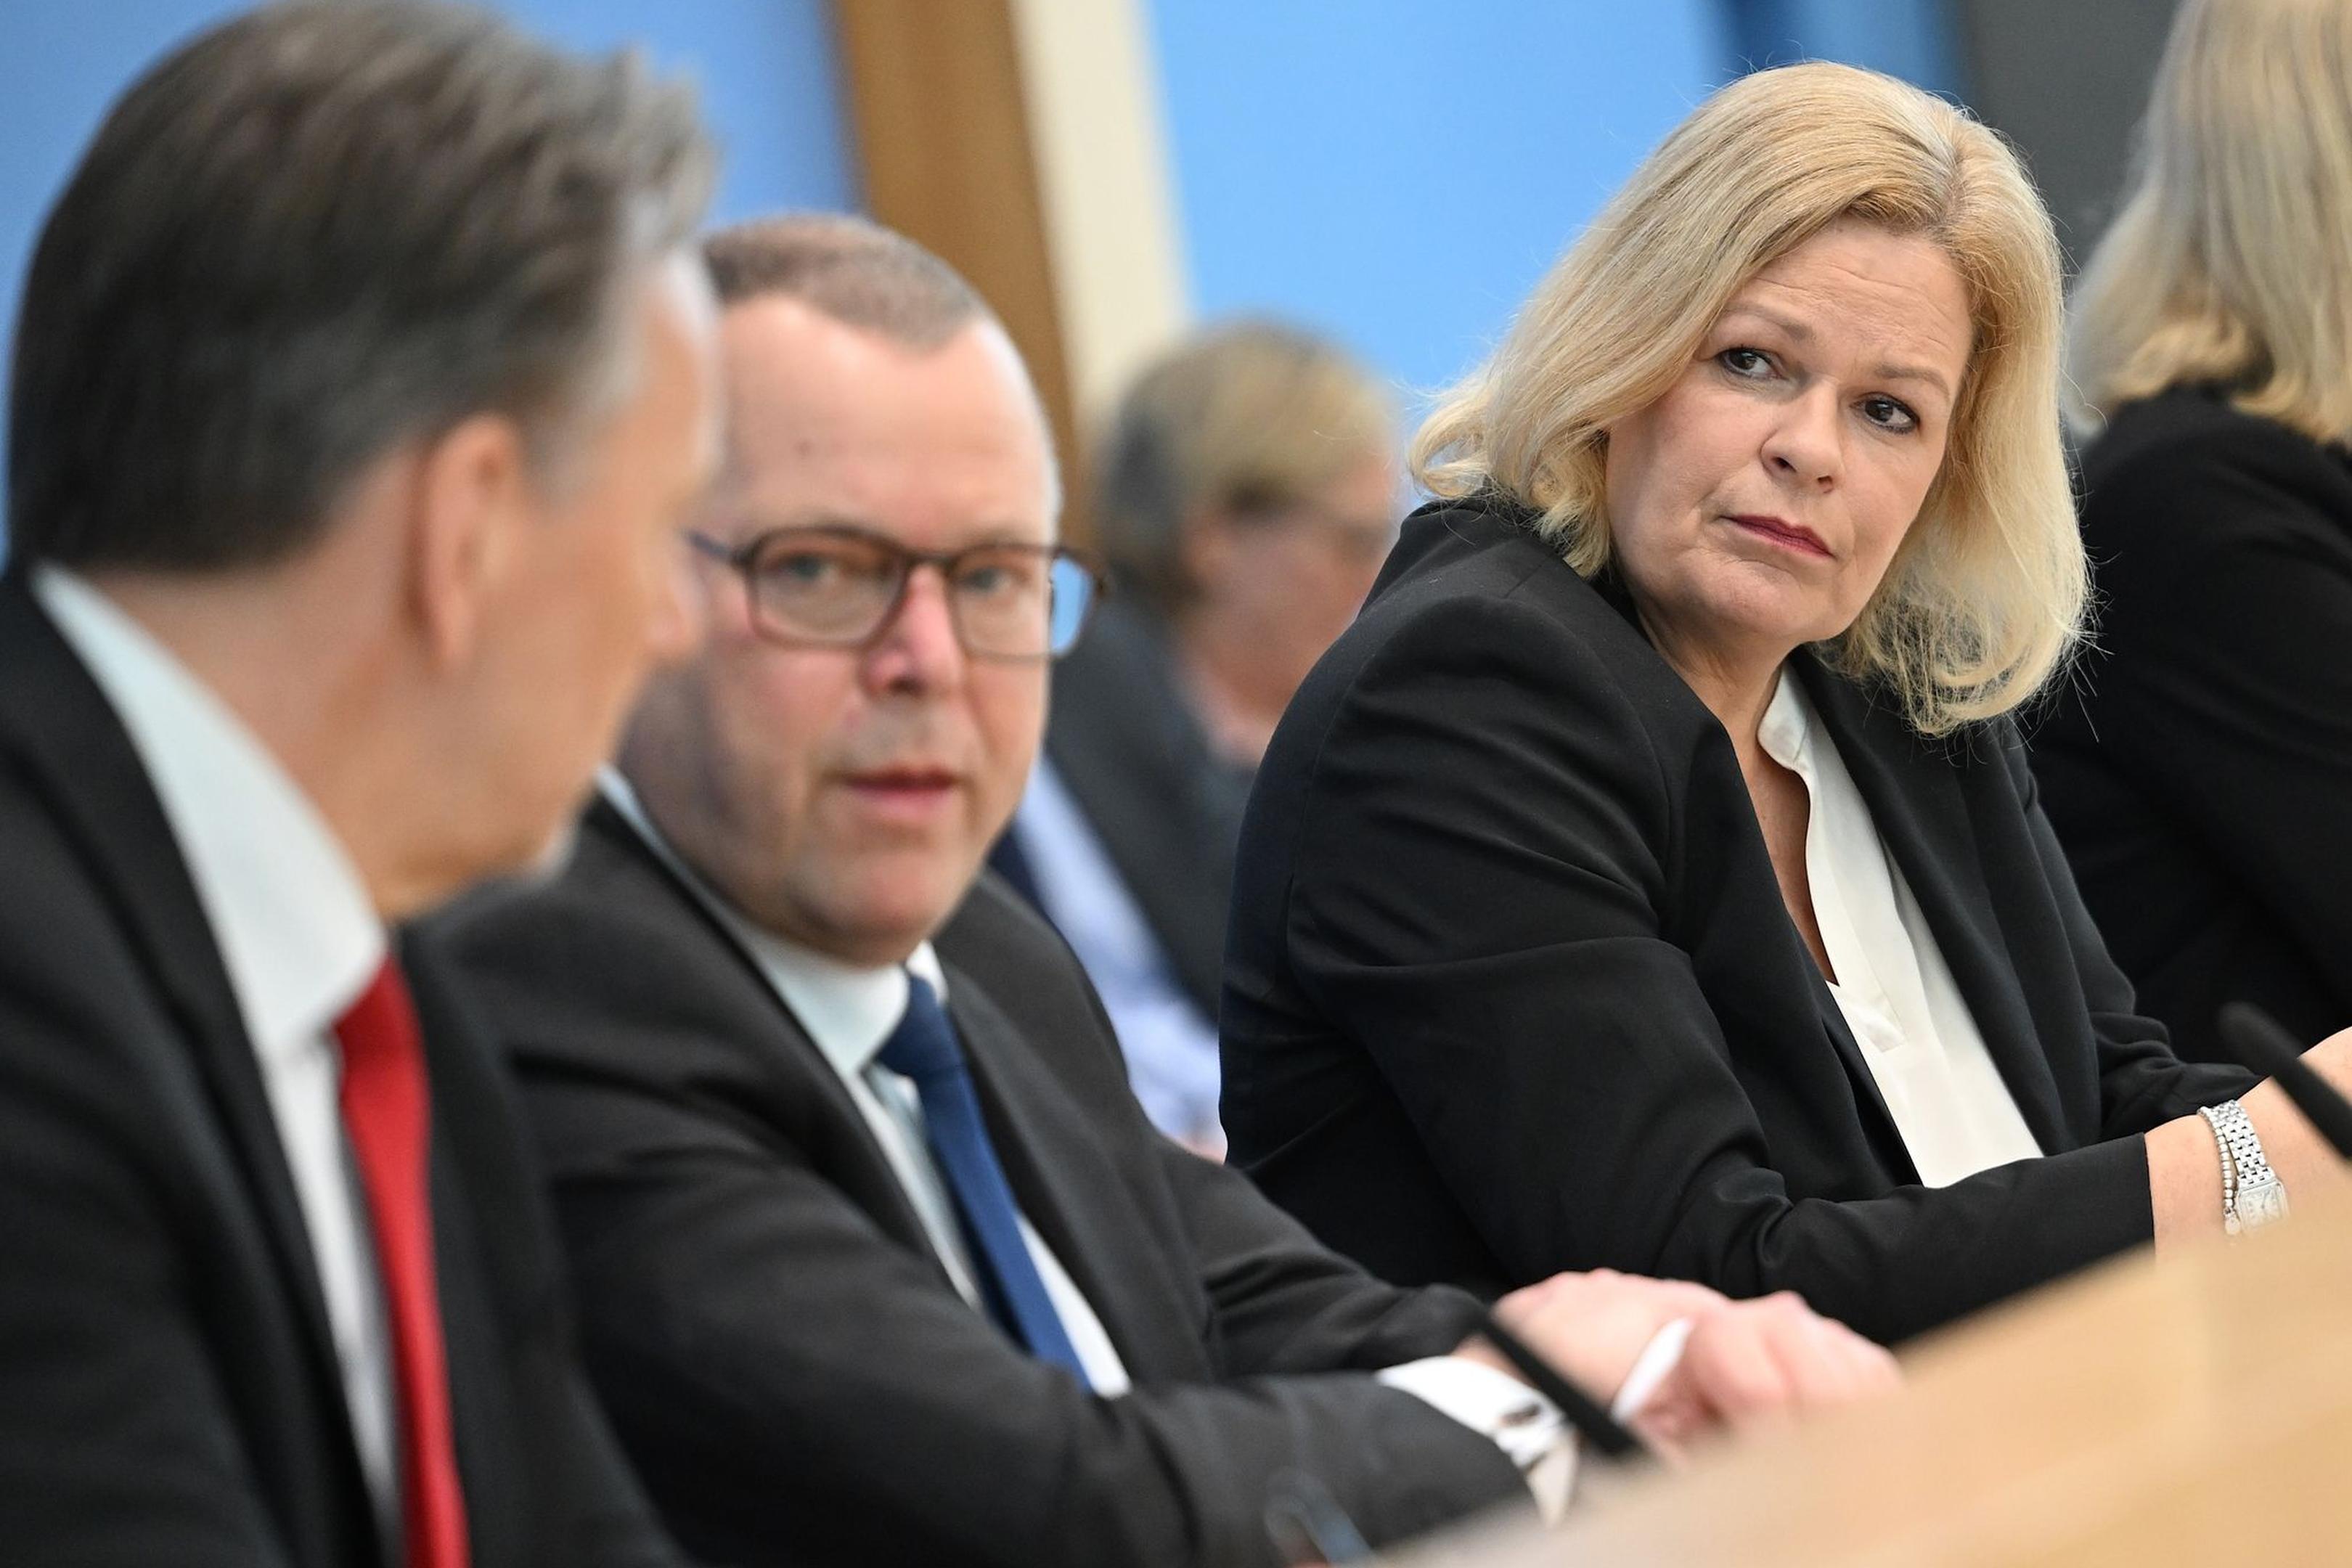 Bundesinnenministerin Nancy Faeser (SPD) und die Länder-Ressortchefs schalten sich heute in einer Videokonferenz zusammen, um nach Angriff in Dresden über besseren Schutz zu beraten.